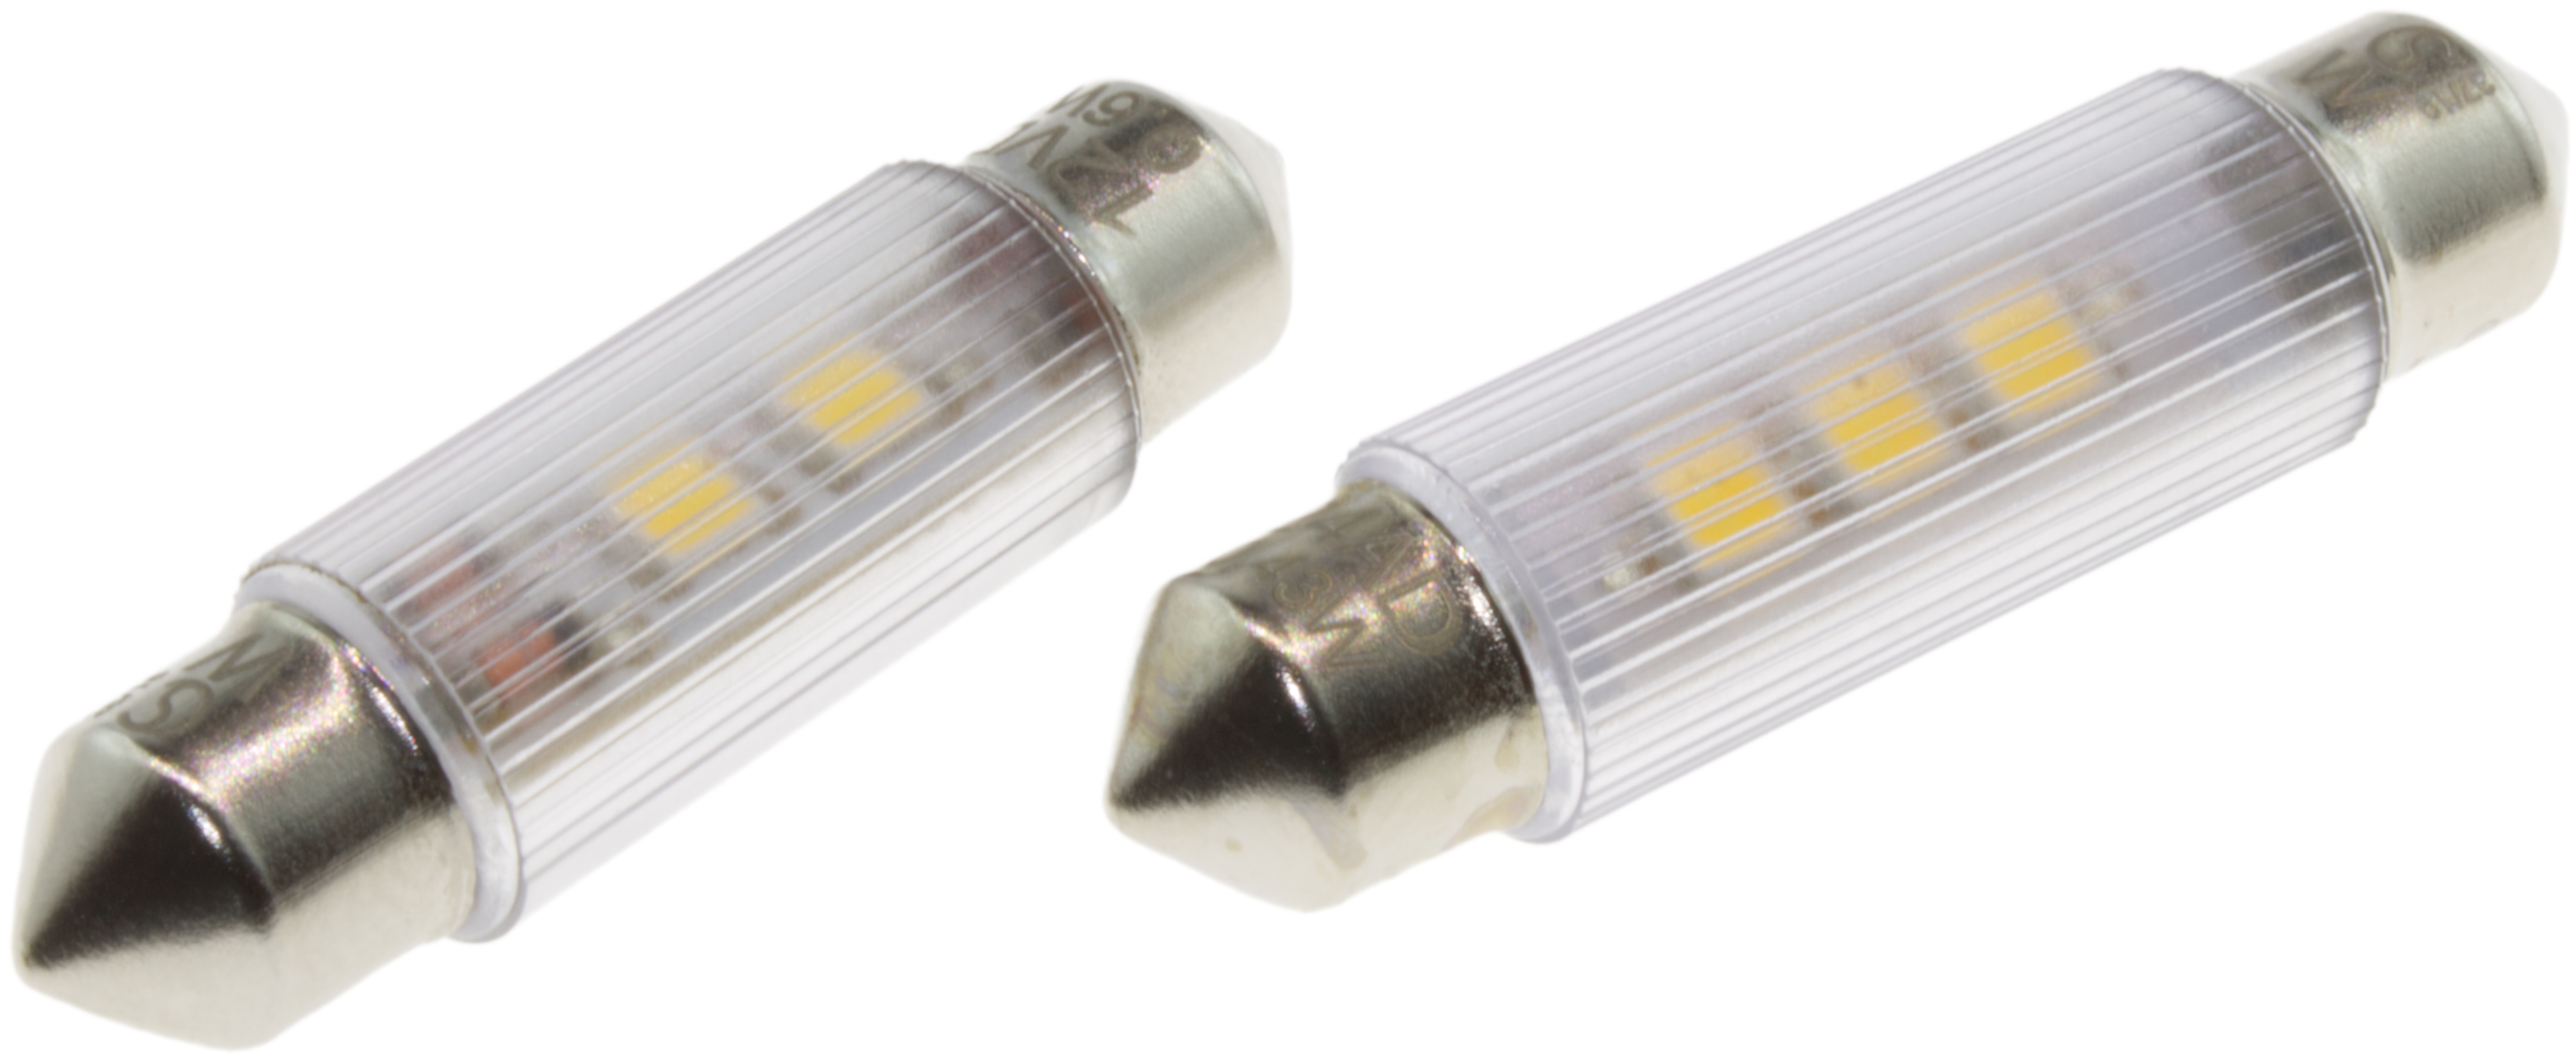 Soffitten-Lampen auf LED-Basis in den Abmessungen Ø 6 x 31 und 6 x